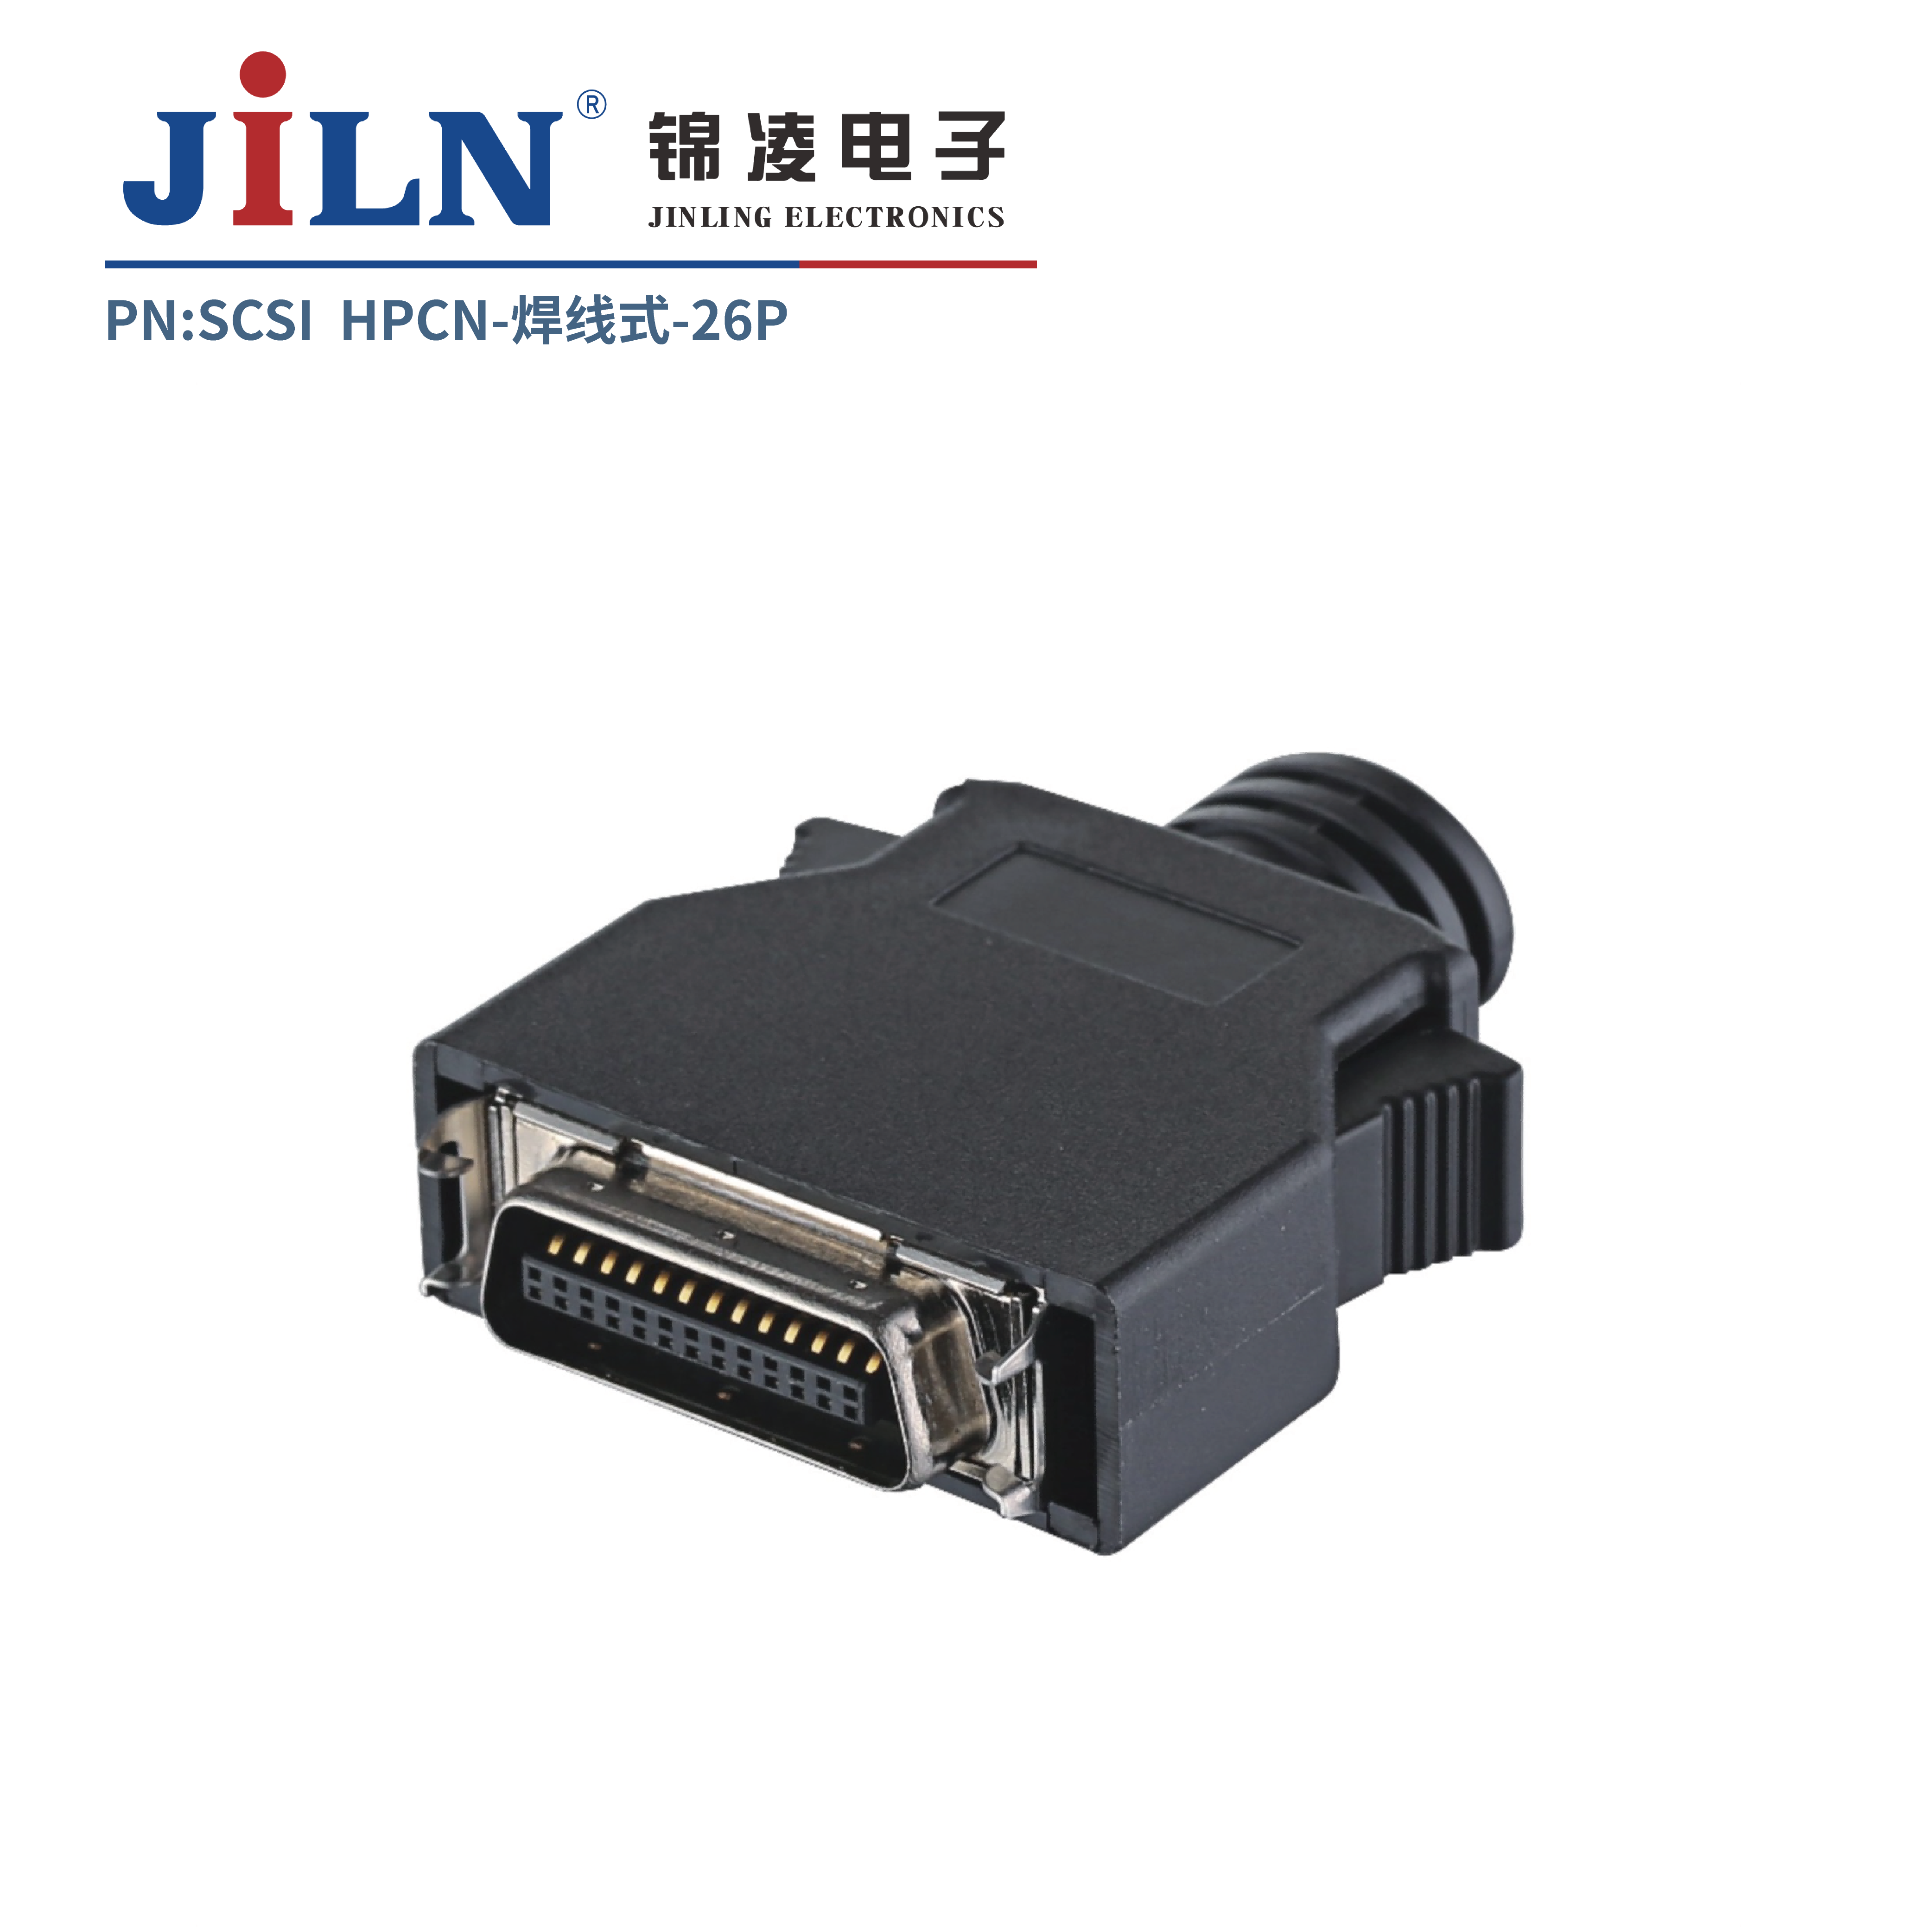 SCSI/HPCN焊线式/26P